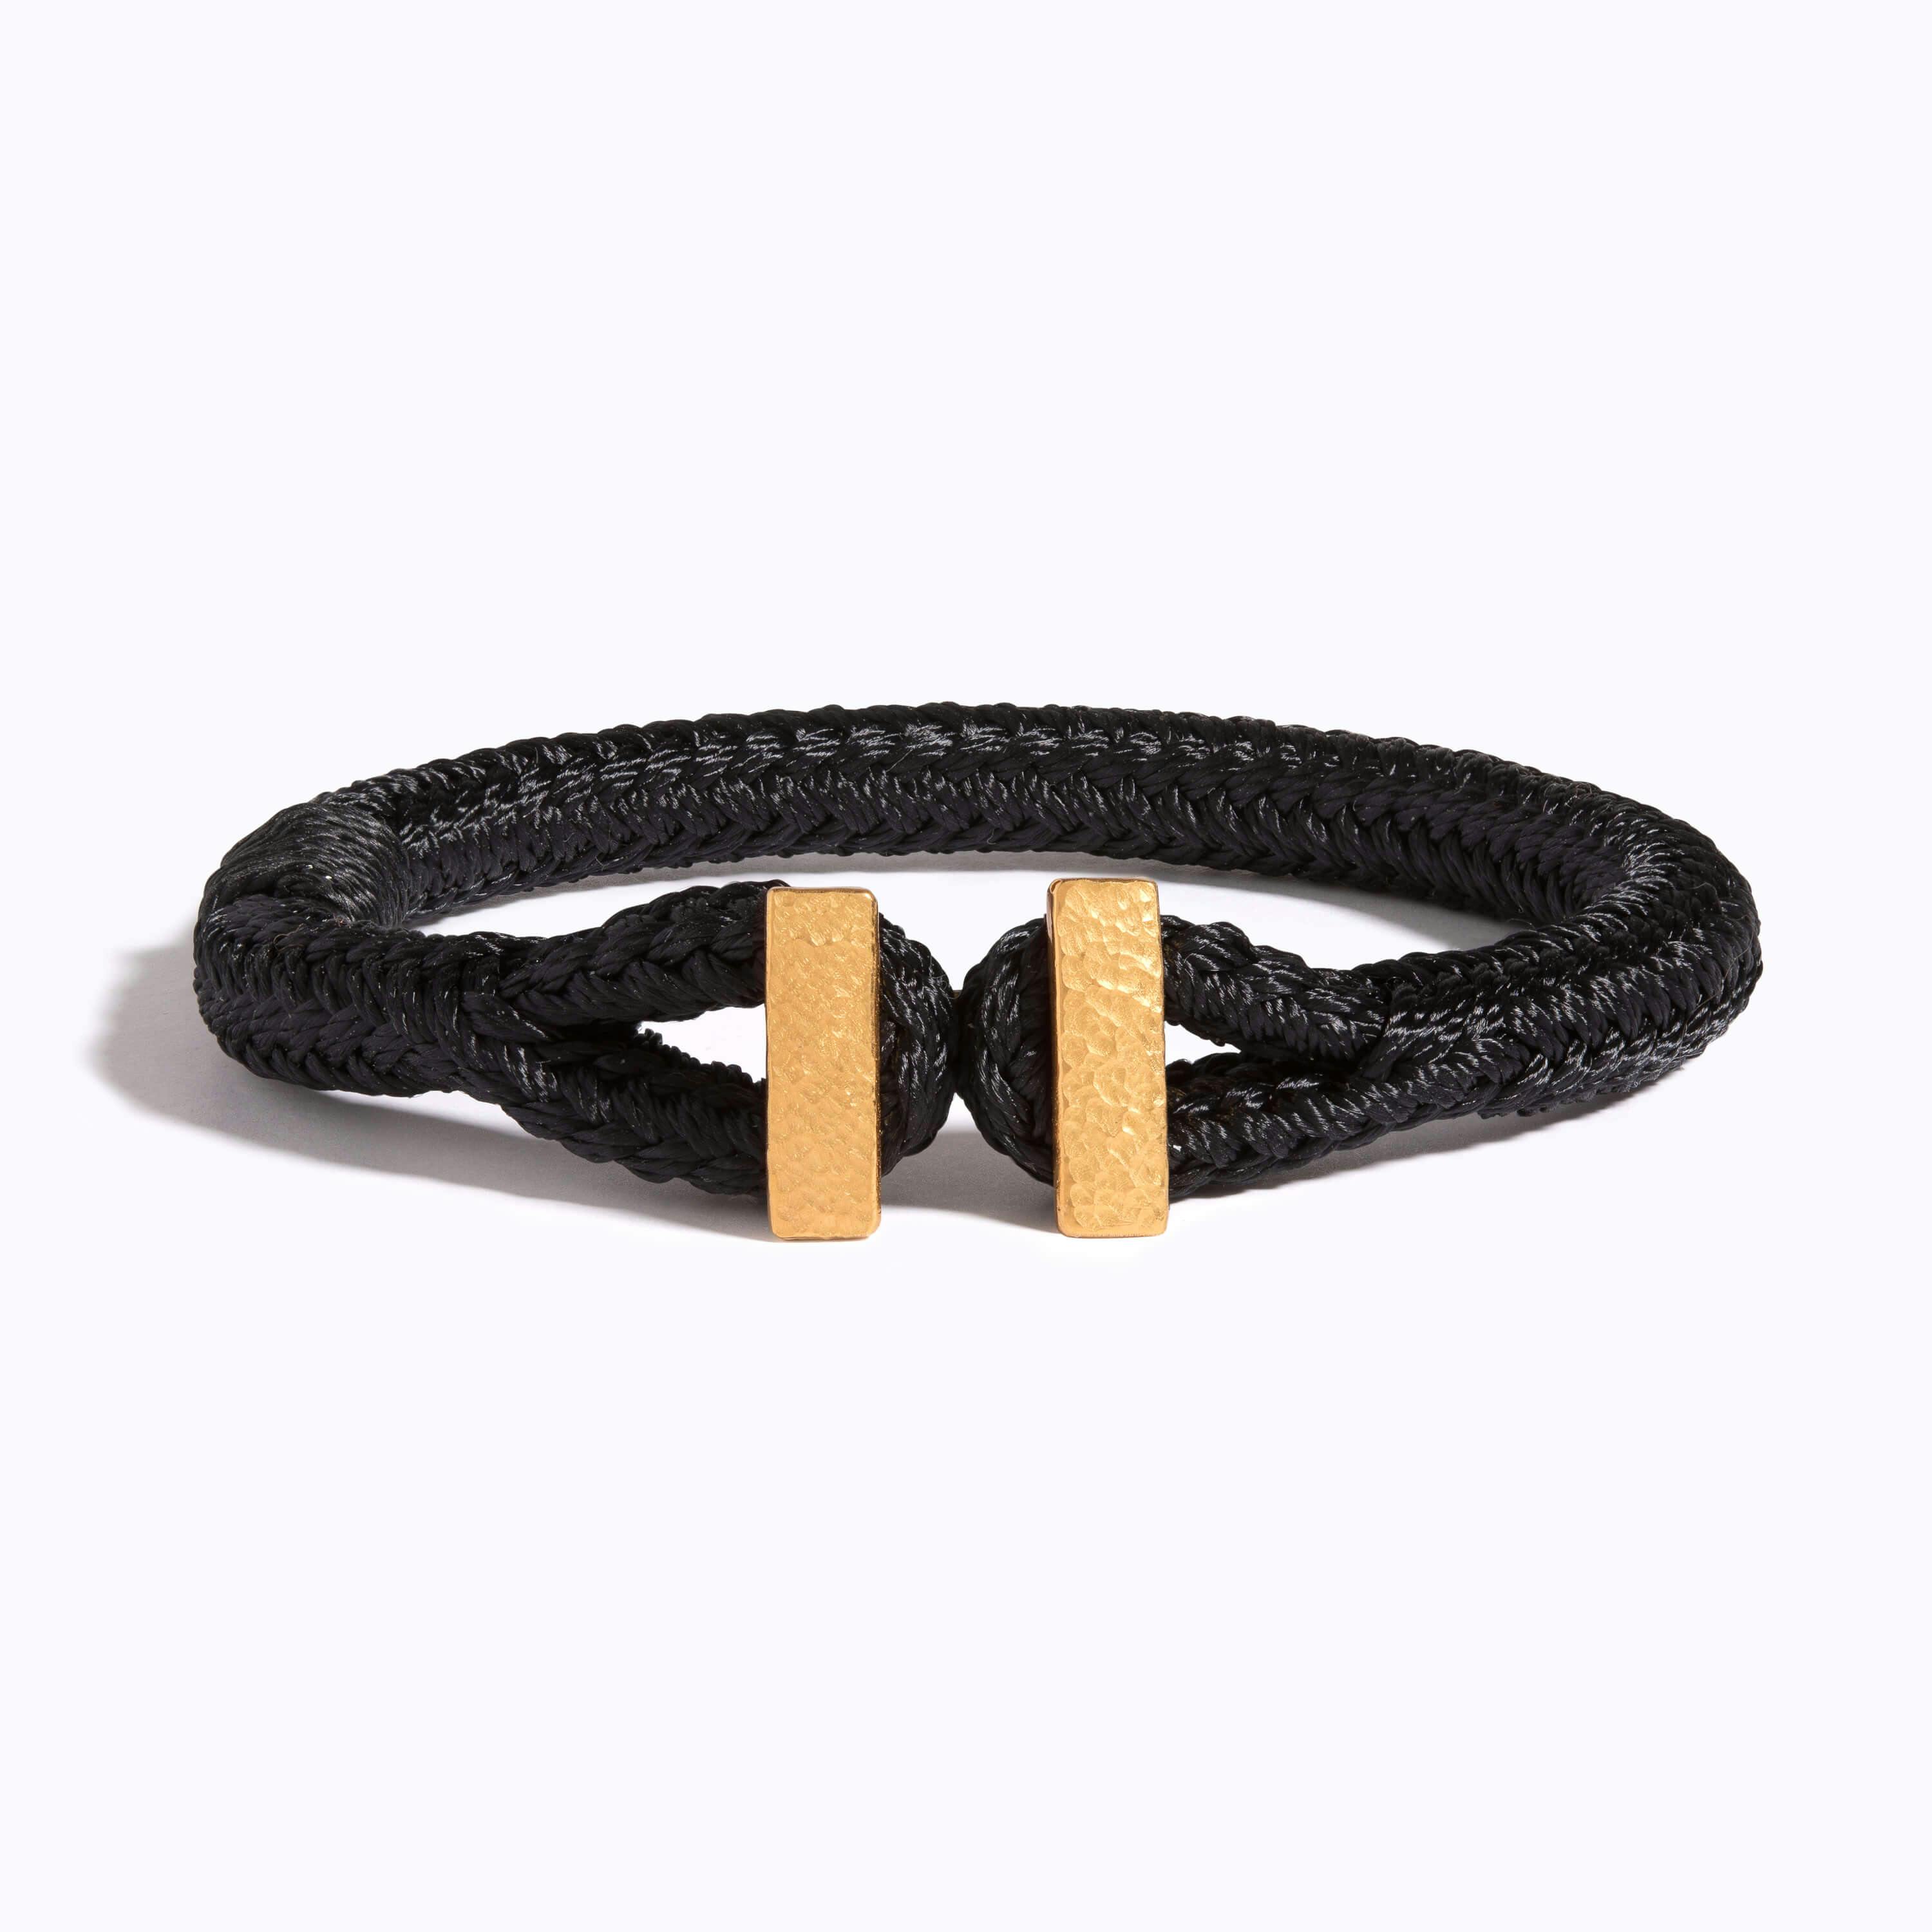 Hammered Woven Bracelet on black nylon rope